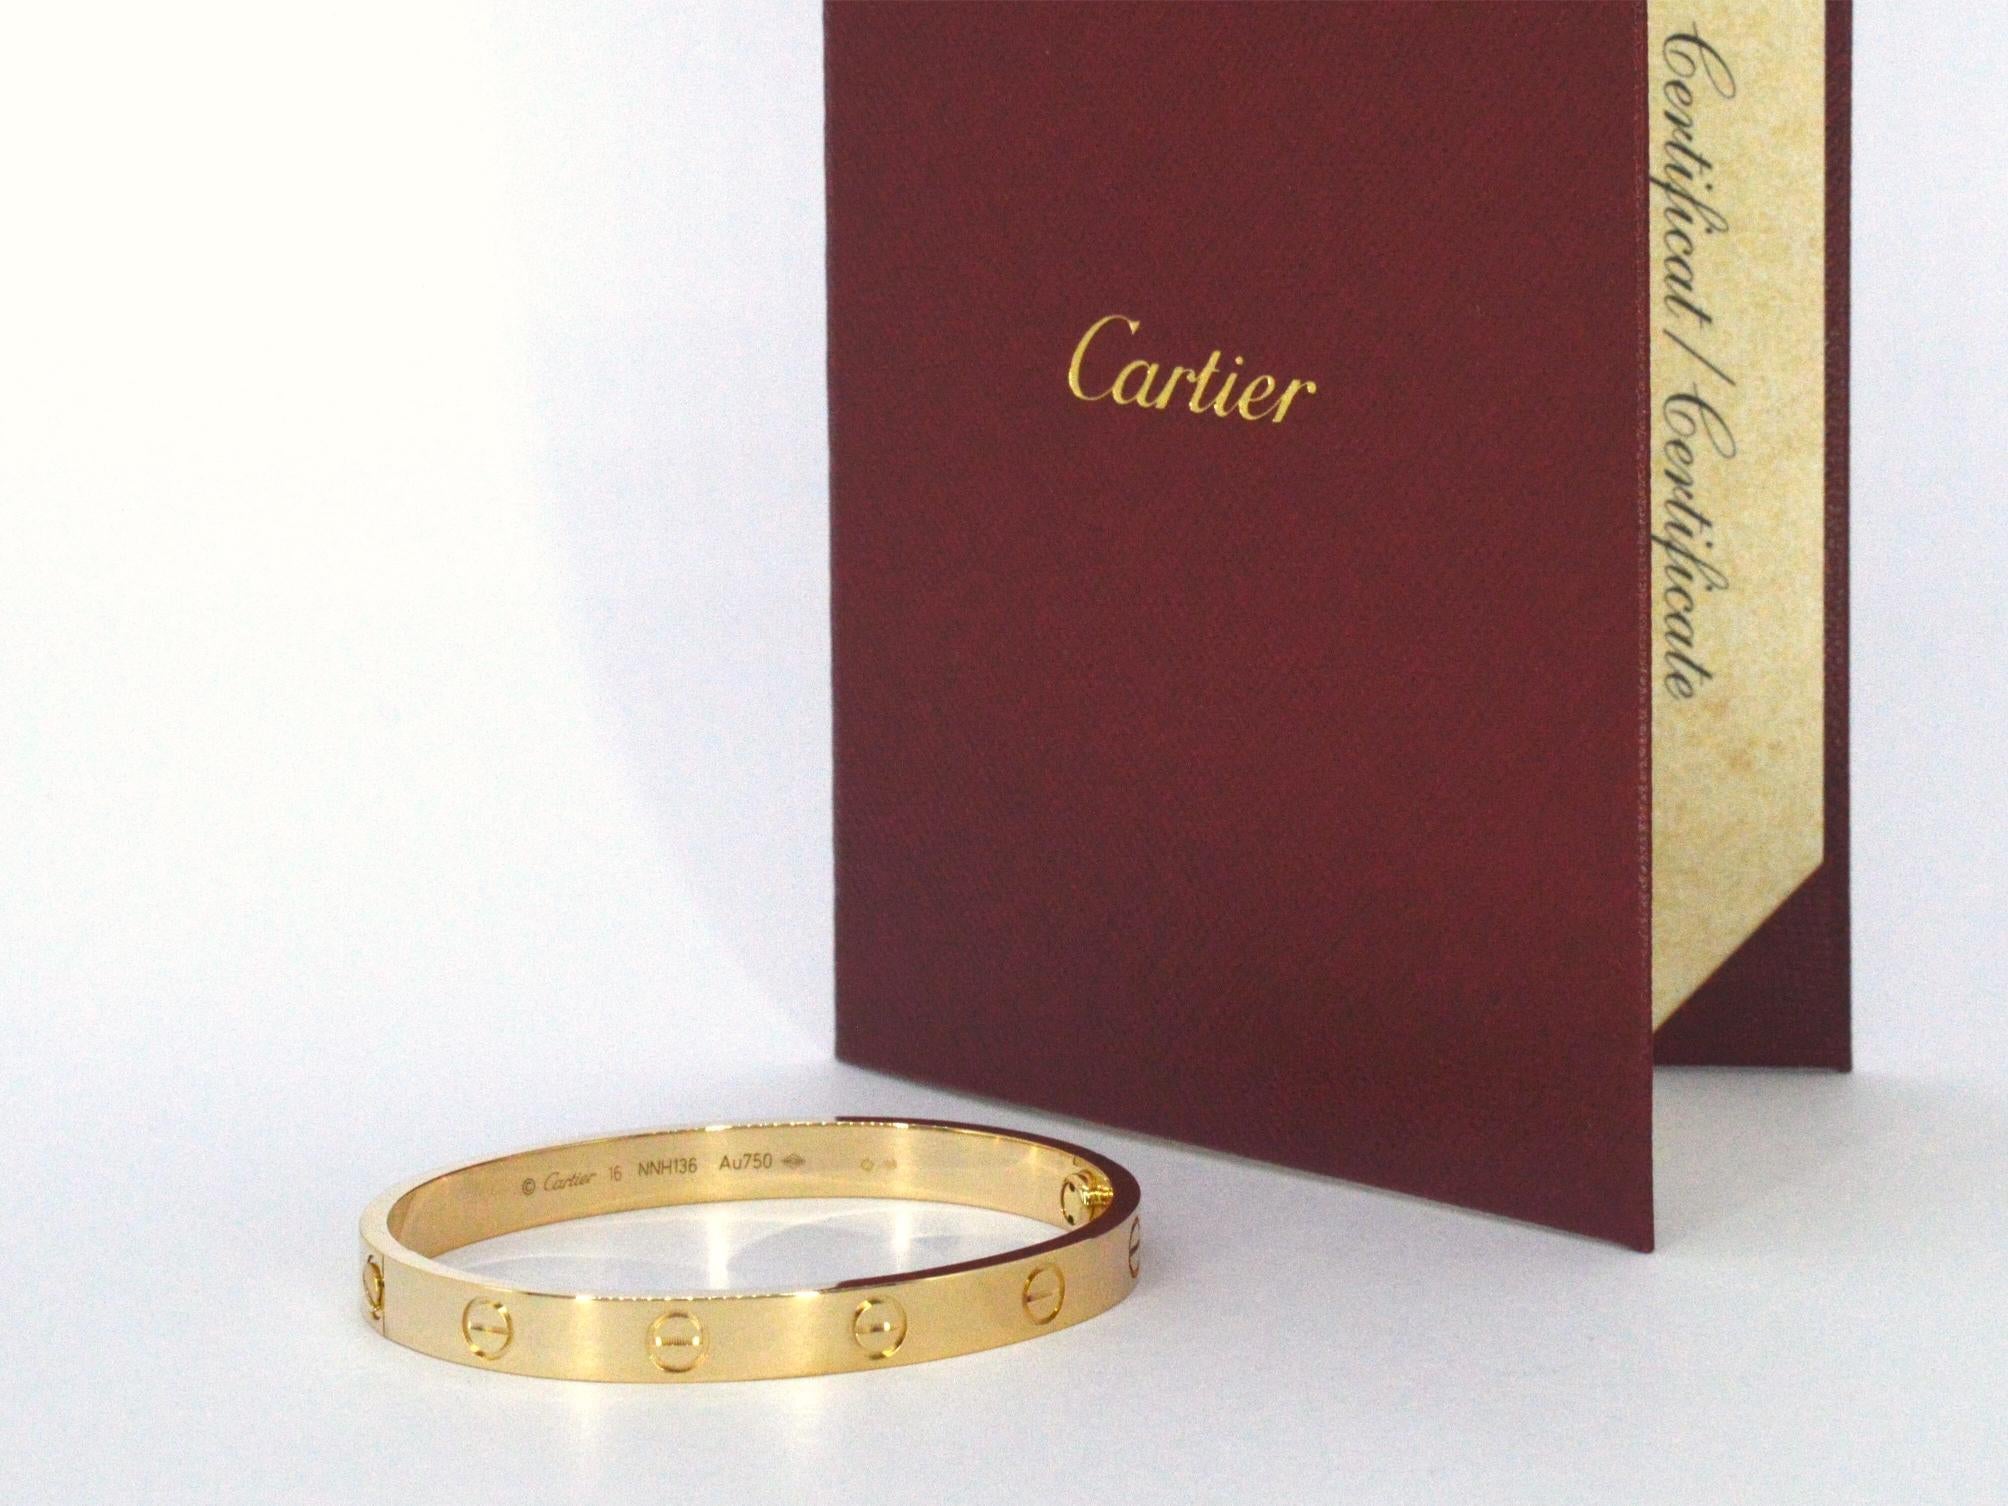 Voici un superbe bracelet d'amour de Cartier, au design intemporel synonyme d'élégance et de luxe. Ce bracelet est livré avec sa boîte d'origine, son certificat et son tournevis, ce qui en garantit l'authenticité et la commodité. Fabriqué en or 18